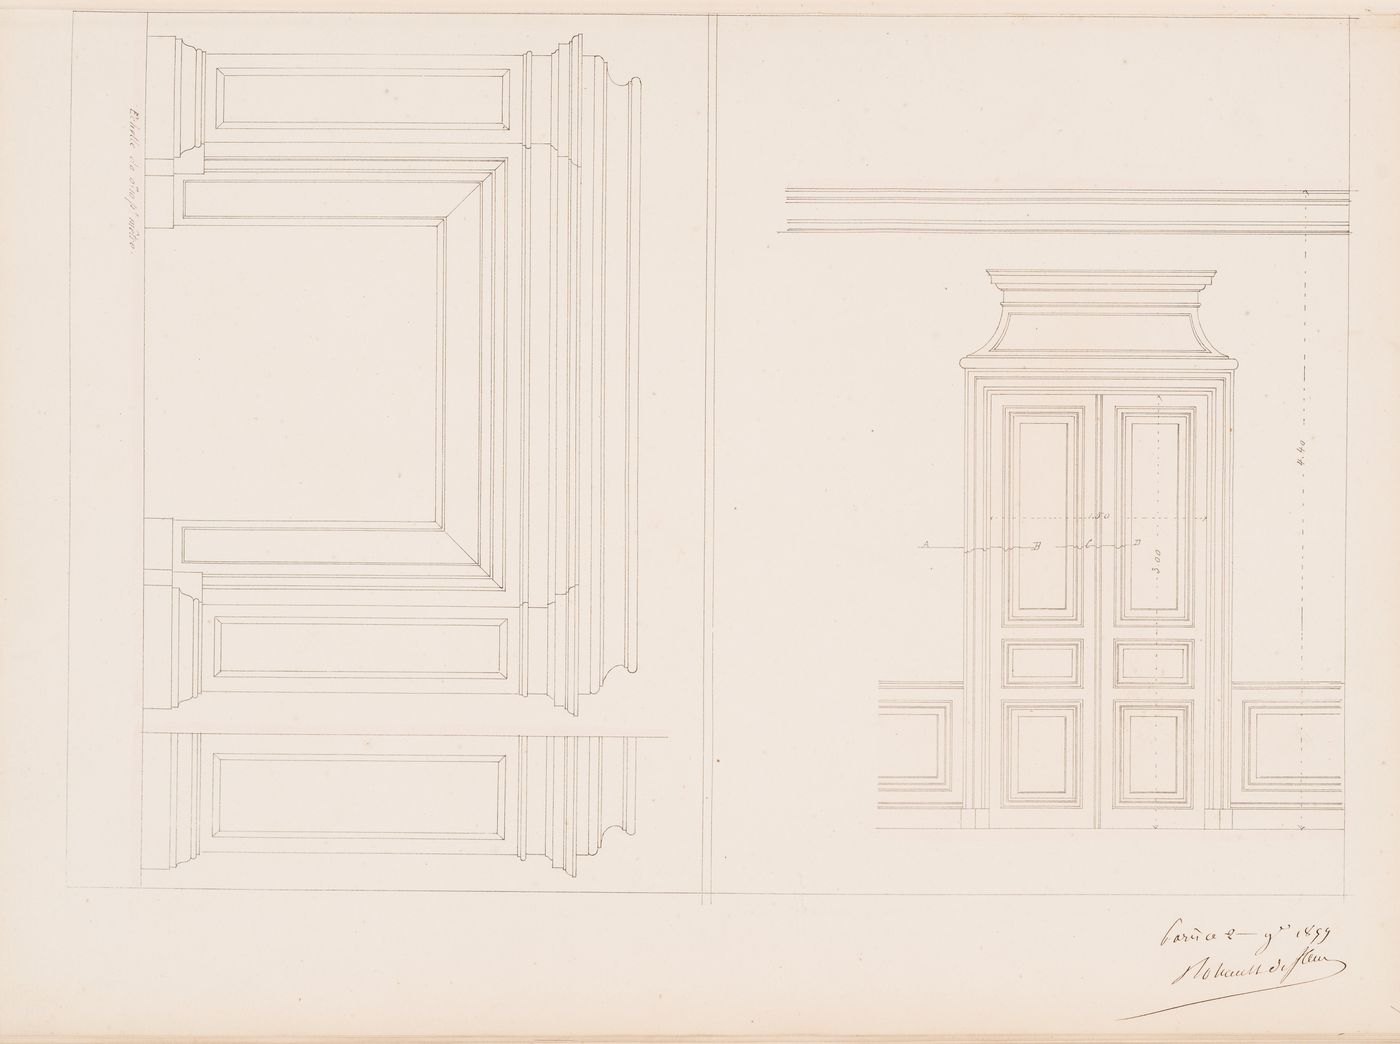 Project for a Hôtel de préfecture, Poitiers: Interior elevations for a mantel and door for the Hôtel du Préfet, probably for the "salon de l'empereur" and vestibule